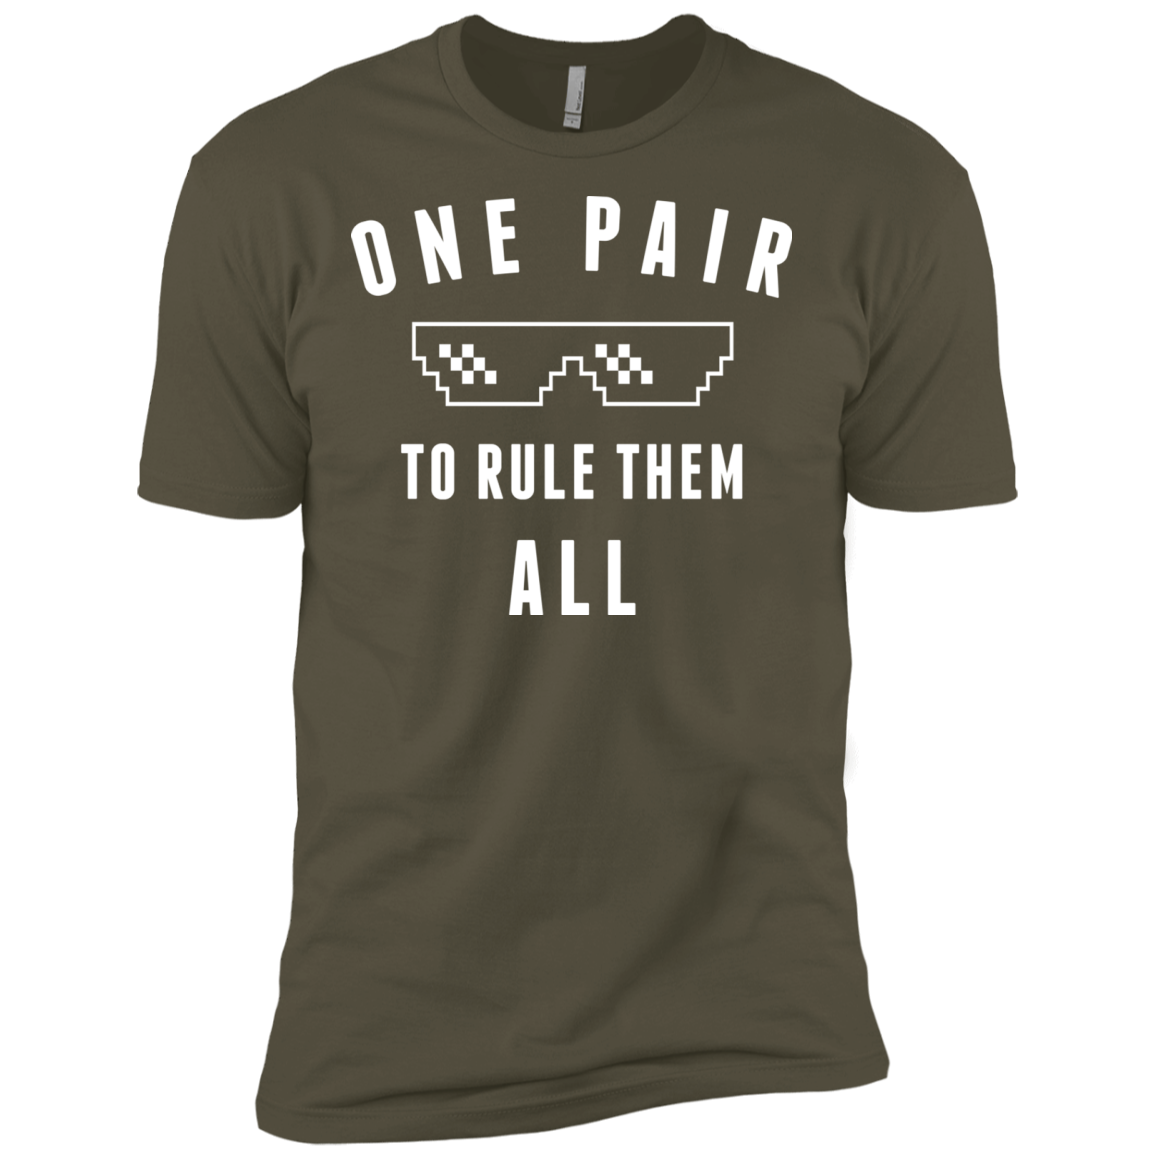 One pair Men's Premium T-Shirt